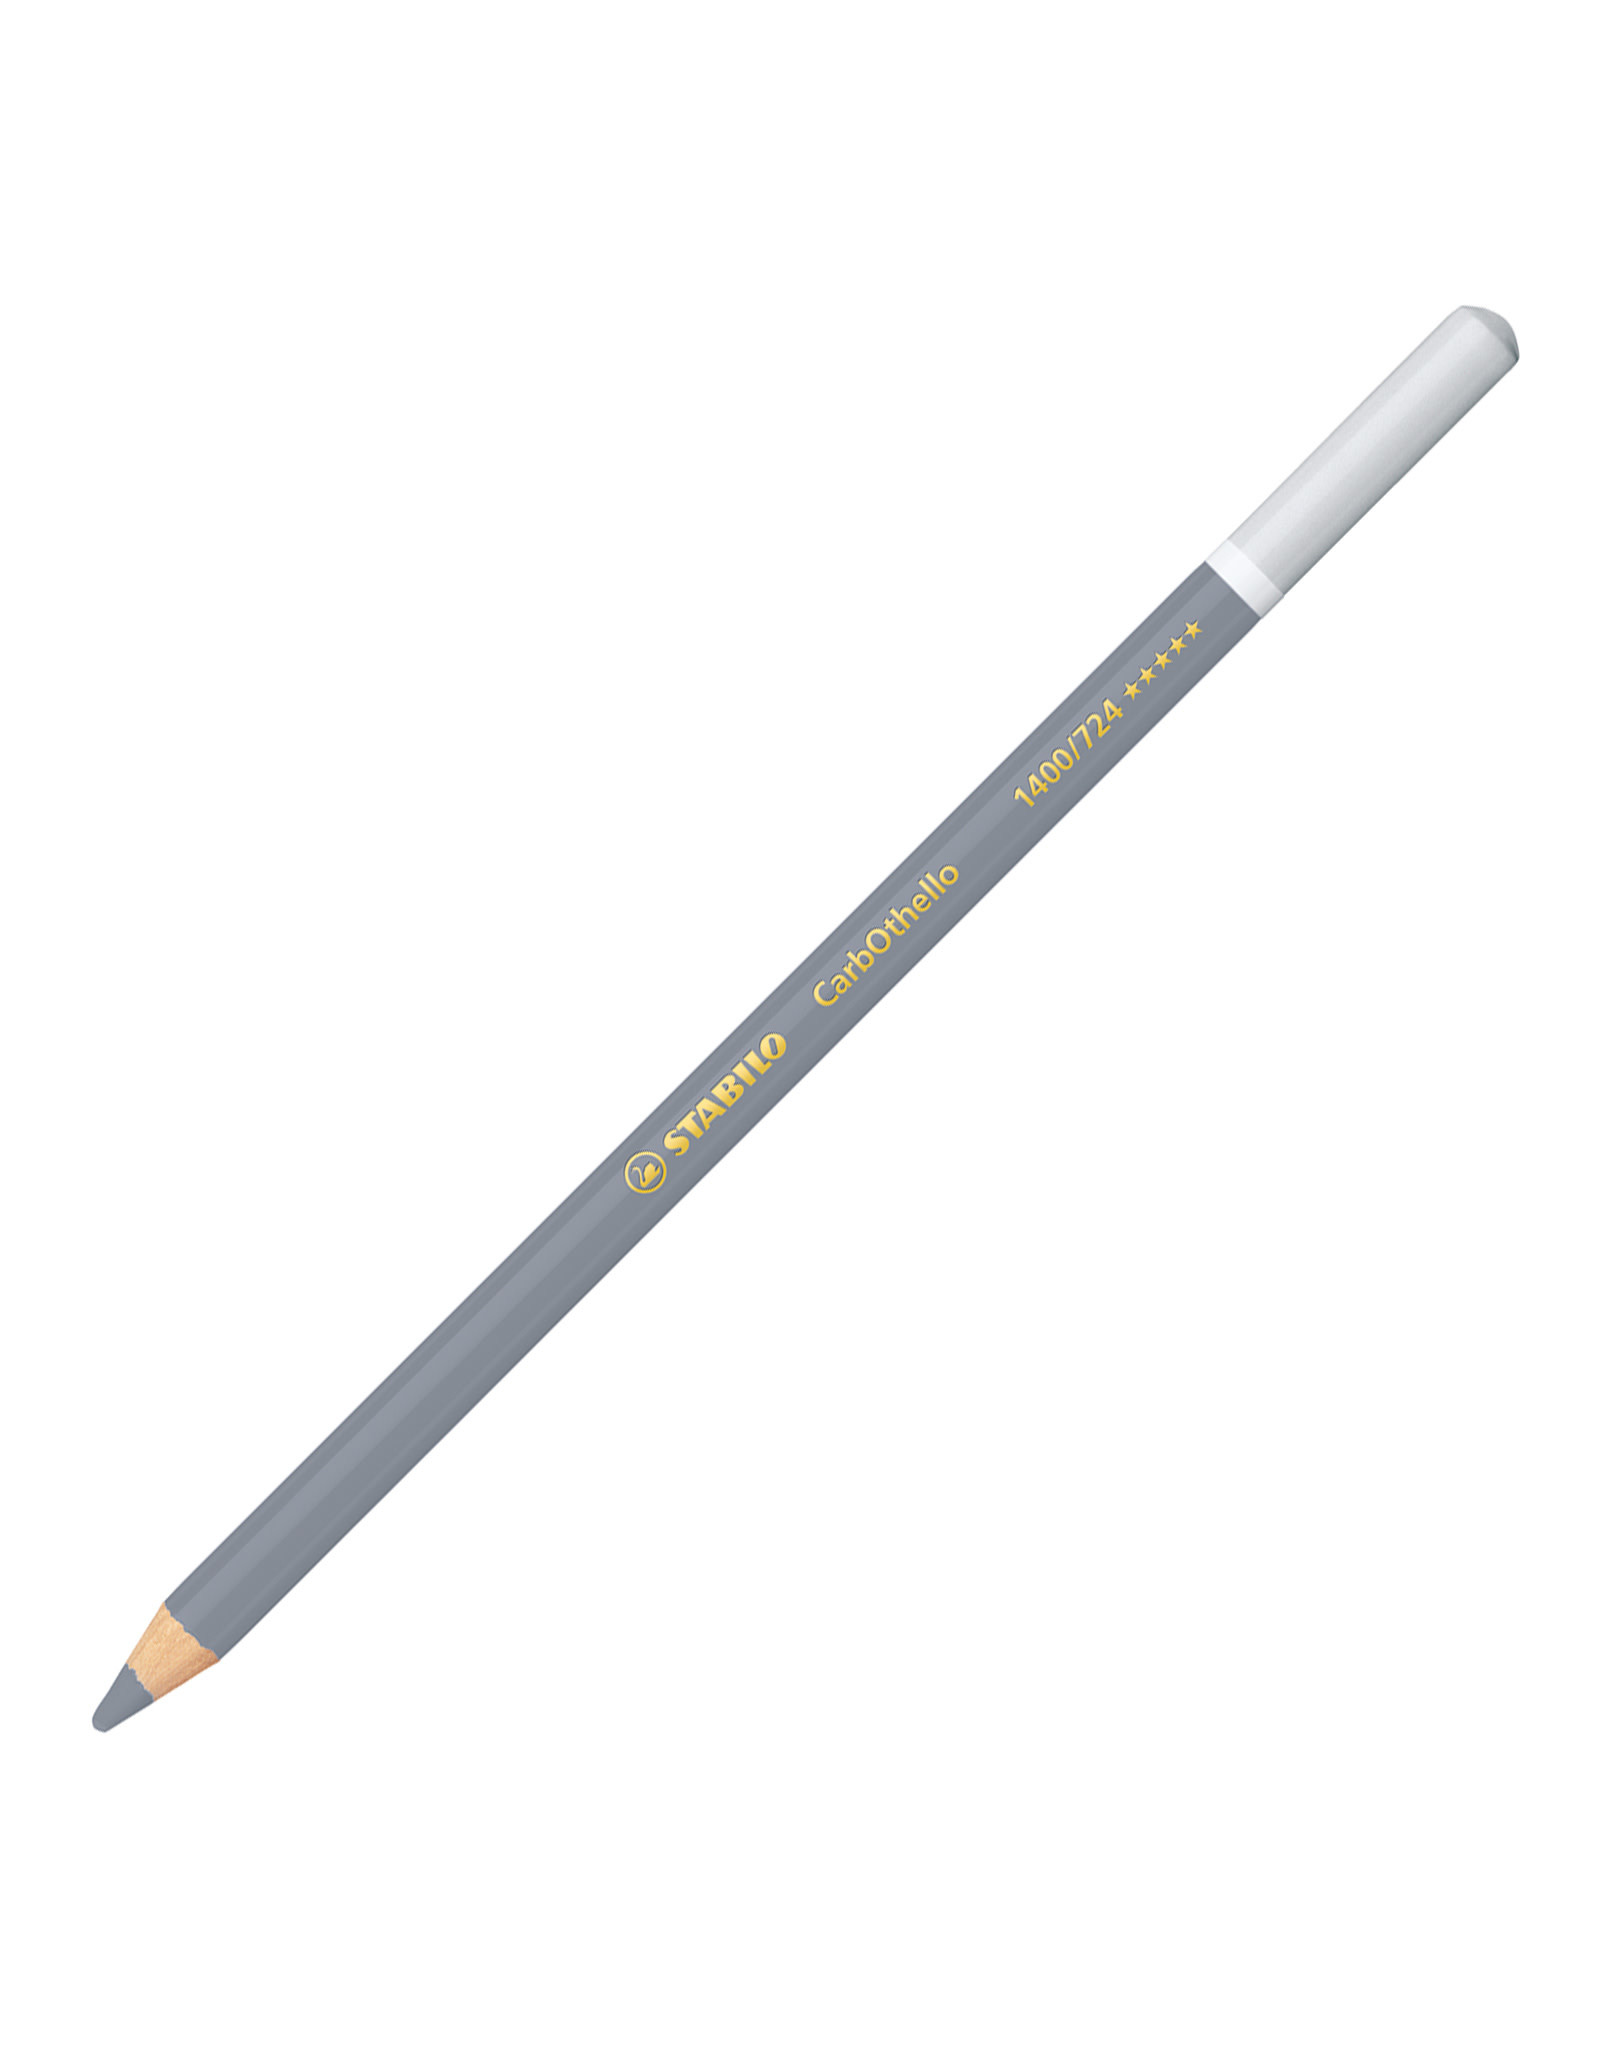 STABILO Stabilo Carbothello Pastel Pencil, Cold Grey 3